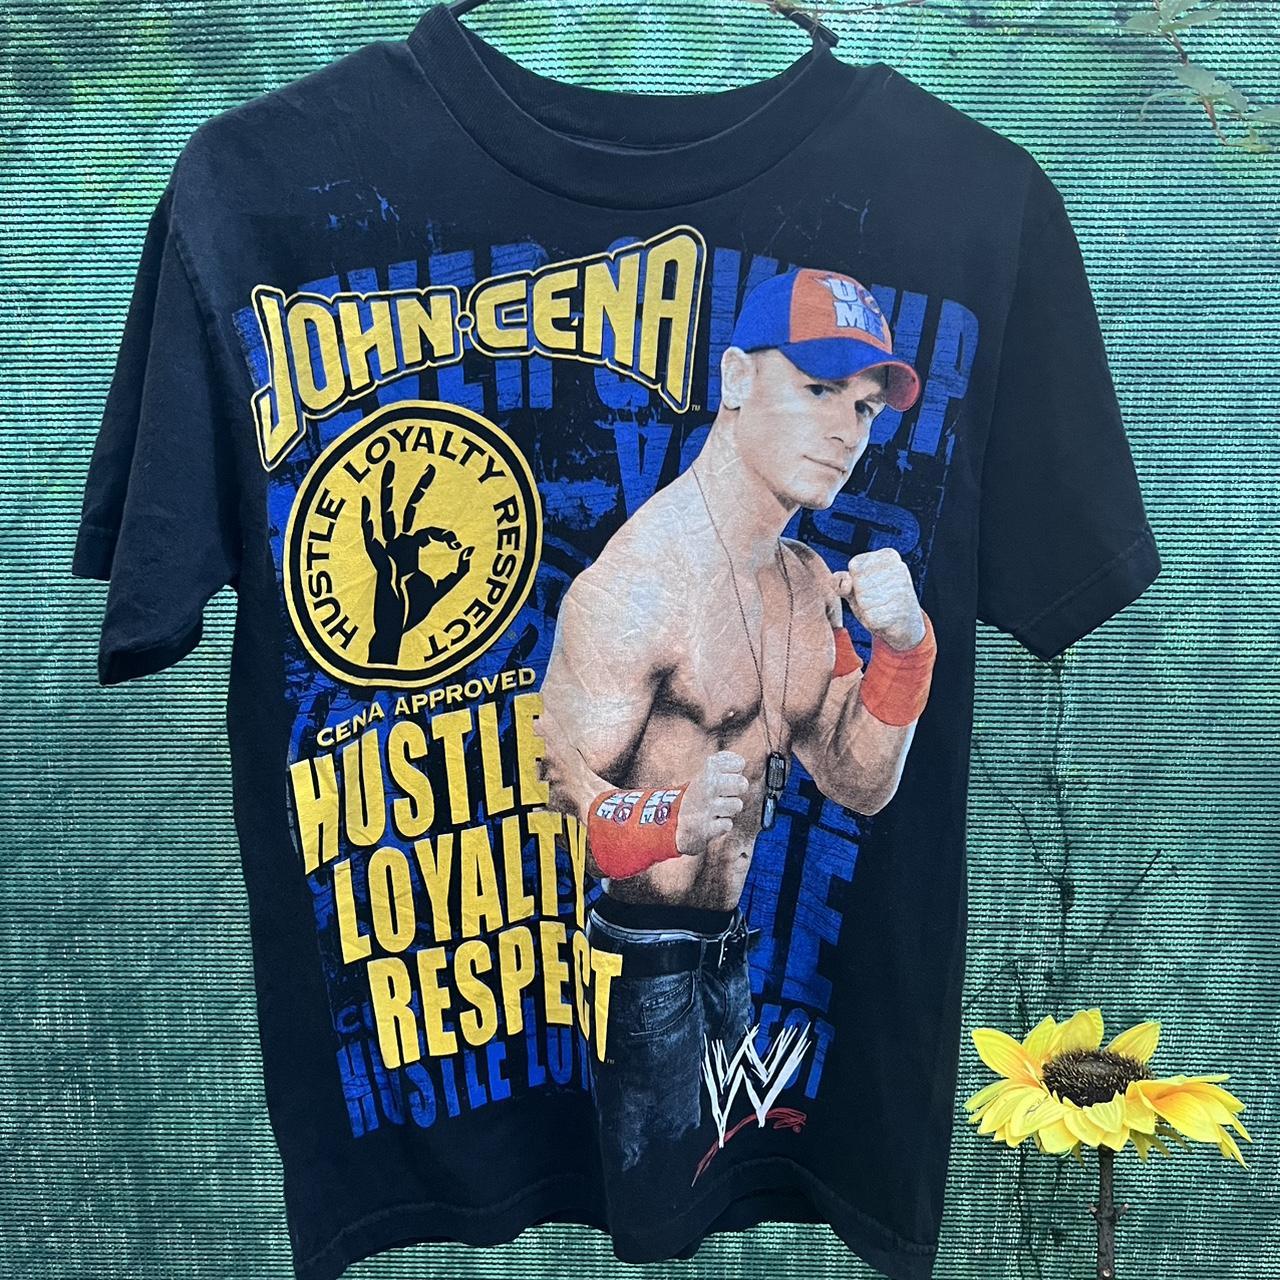 Official WWE John Cena NEVER GIVE UP backpack - Depop